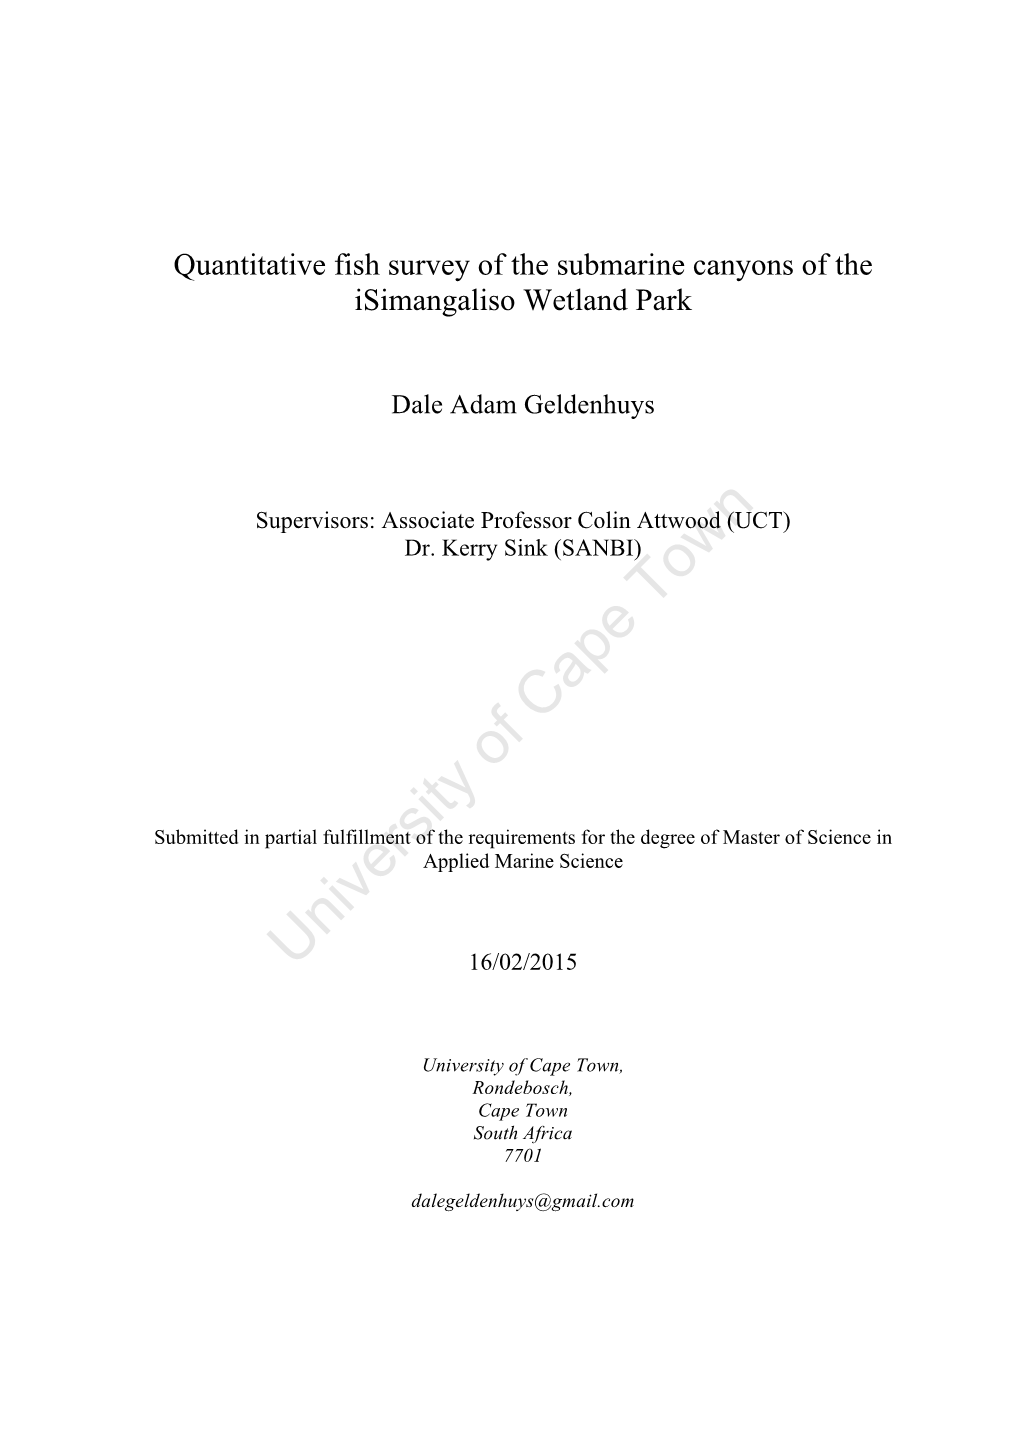 Quantitative Fish Survey of the Submarine Canyons of the Isimangaliso Wetland Park